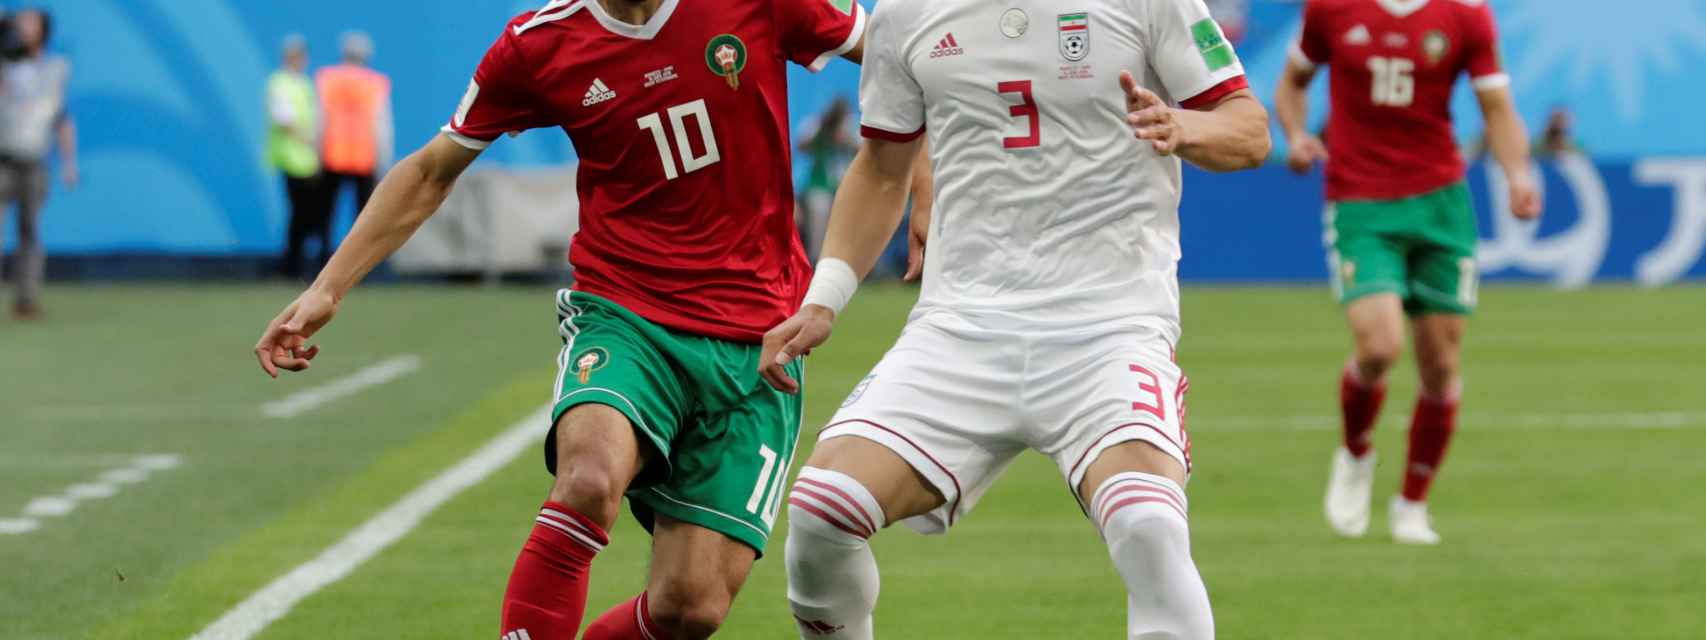 Ataque de nervios Huérfano La cabra Billy Marruecos - Irán, en vivo y en directo: siga el Mundial de Rusia 2018